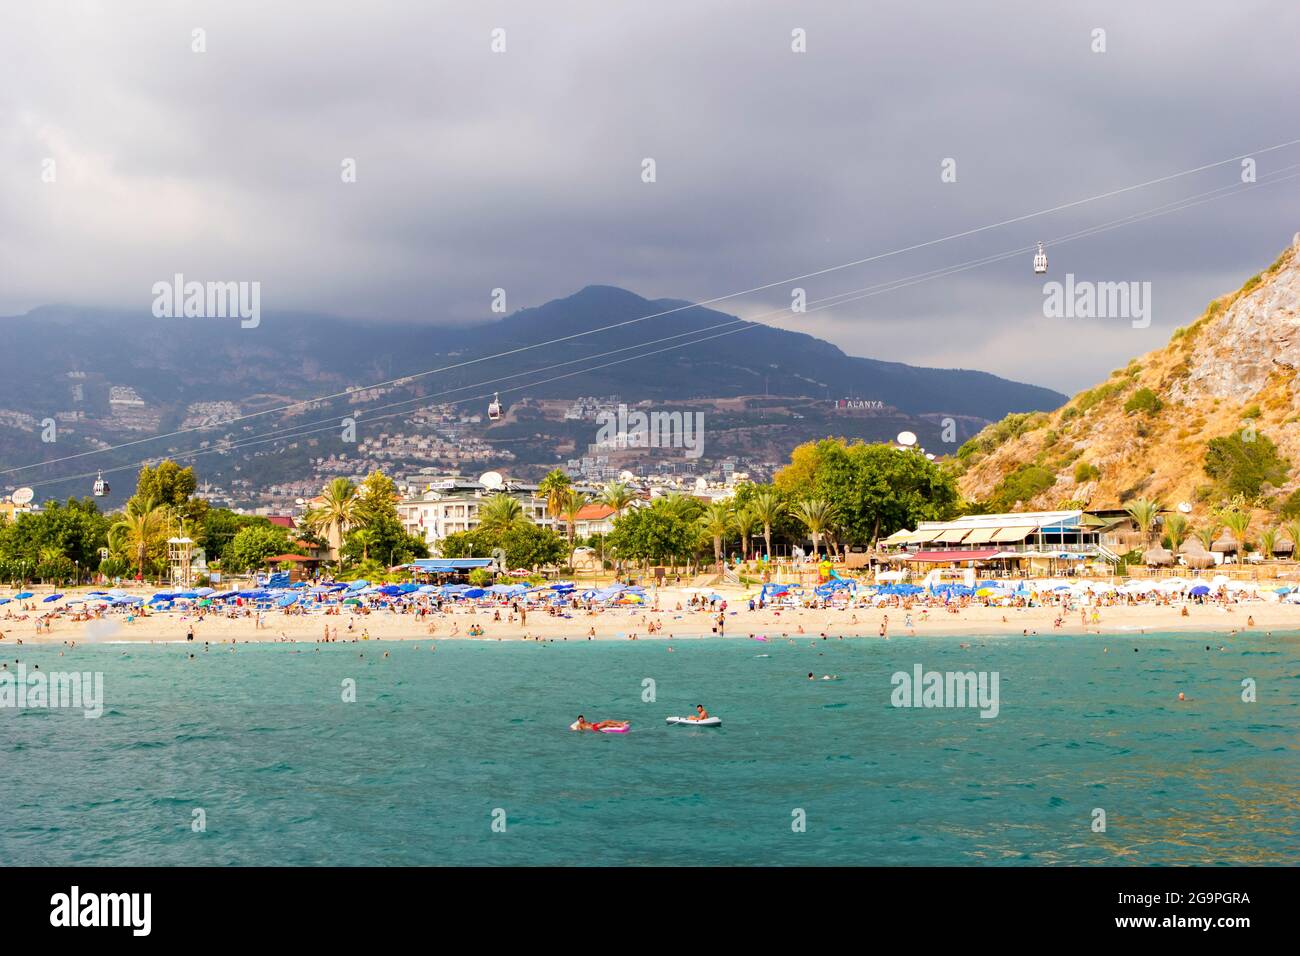 Turchia, Alanya, Cleopatra spiaggia - 30 agosto 2017: Panorama della spiaggia sullo sfondo delle montagne, vista dal mare. Foto Stock